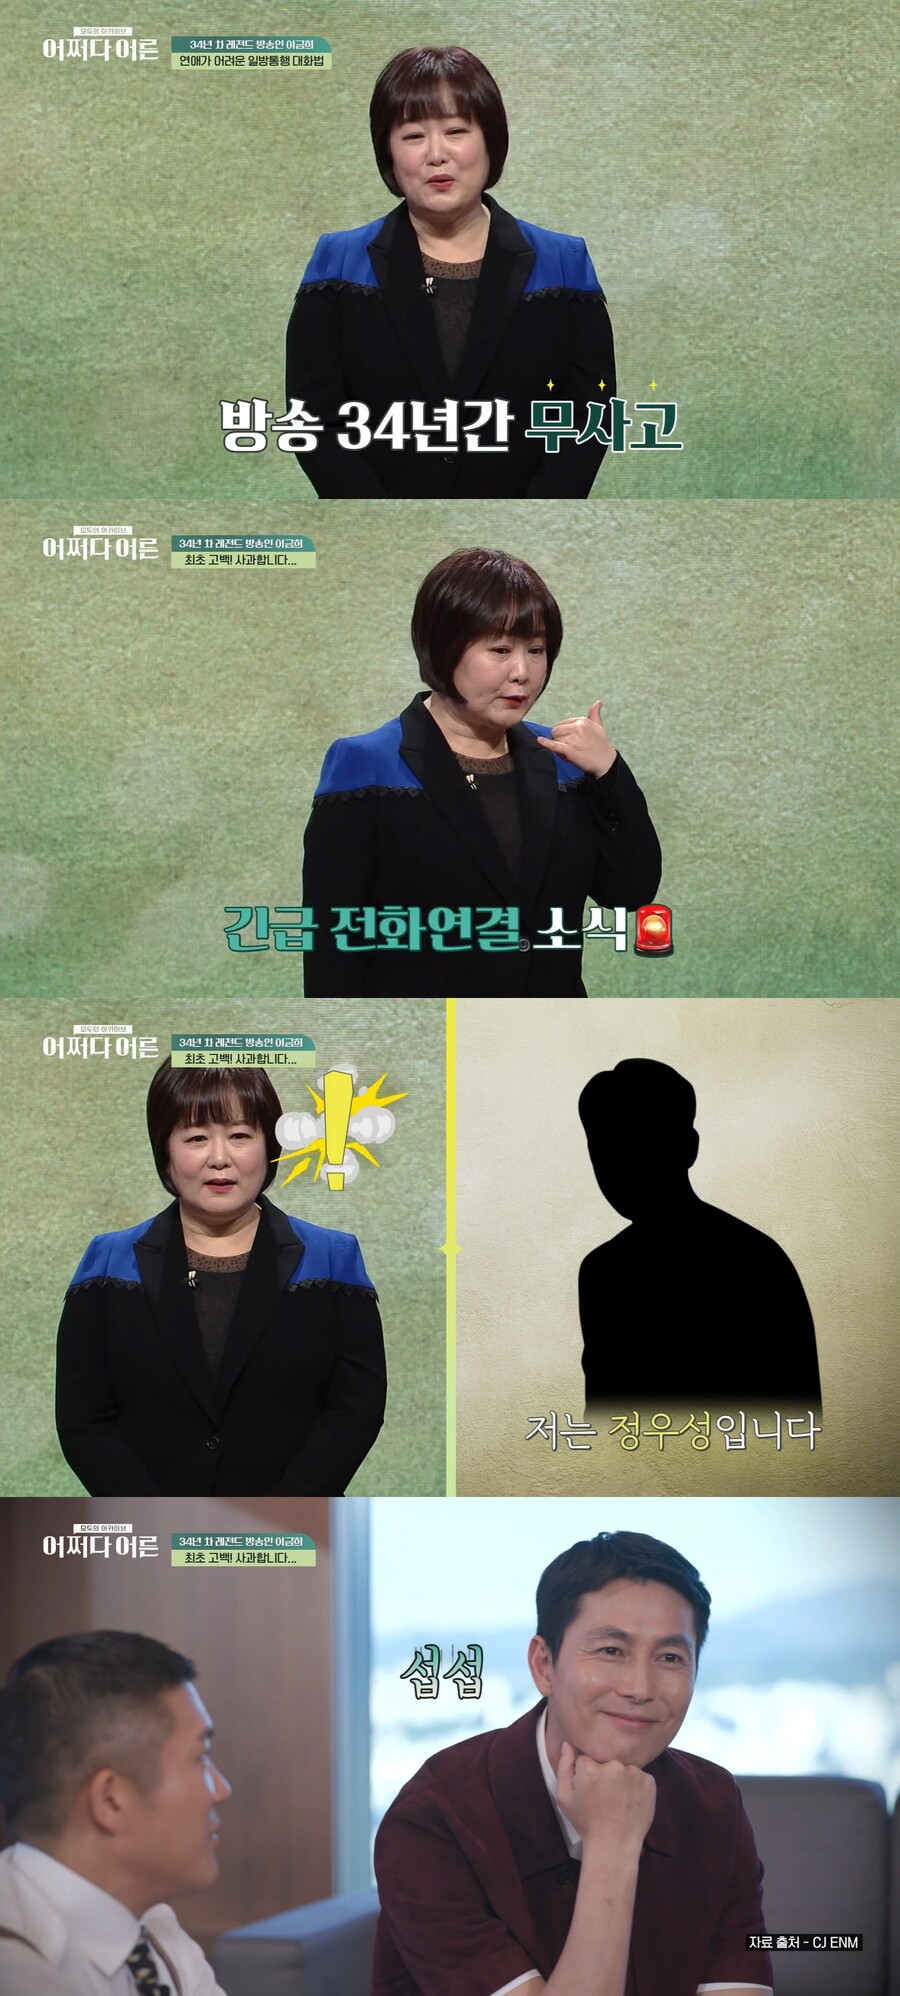 ▲ 아나운서 출신 방송인 이금희, 배우 정우성. 출처| tvN 스토리 '어쩌다 어른' 방송화면 캡처